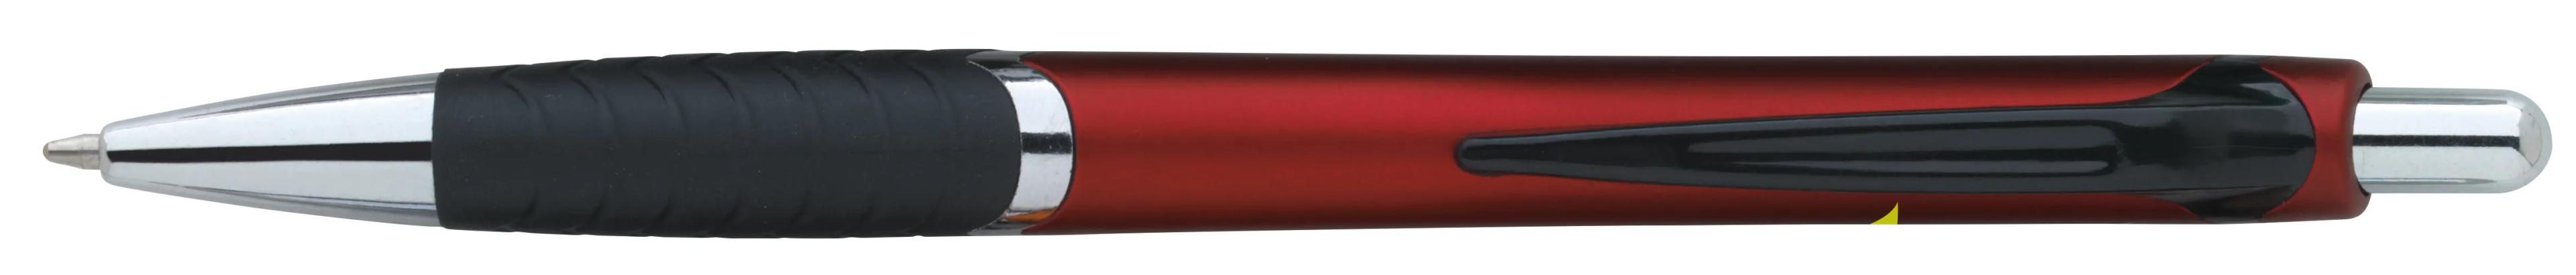 Arrow Metallic Pen 21 of 43